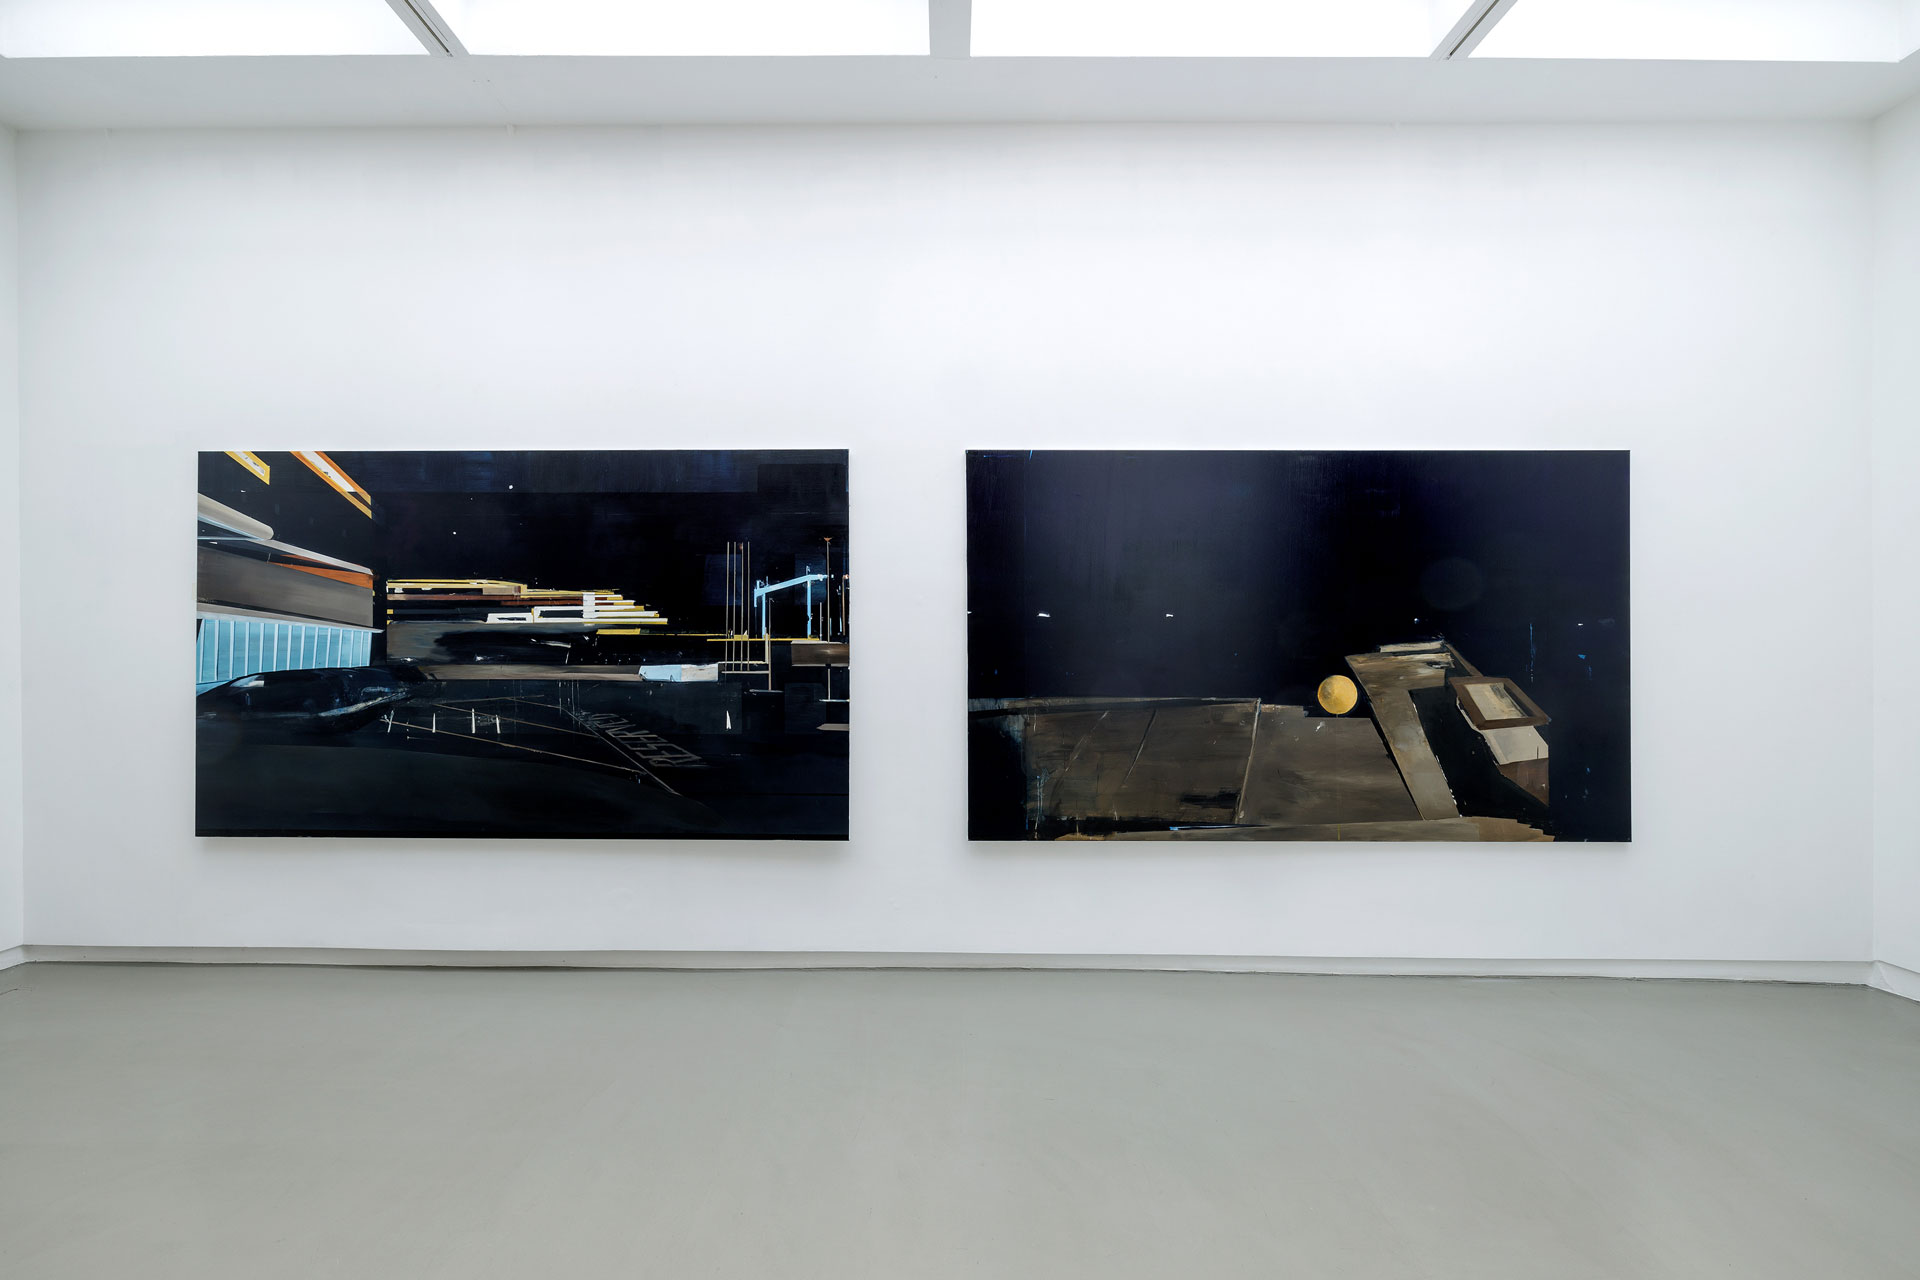 Carla Klein - Gallery Installation at Annet Gelink 2022